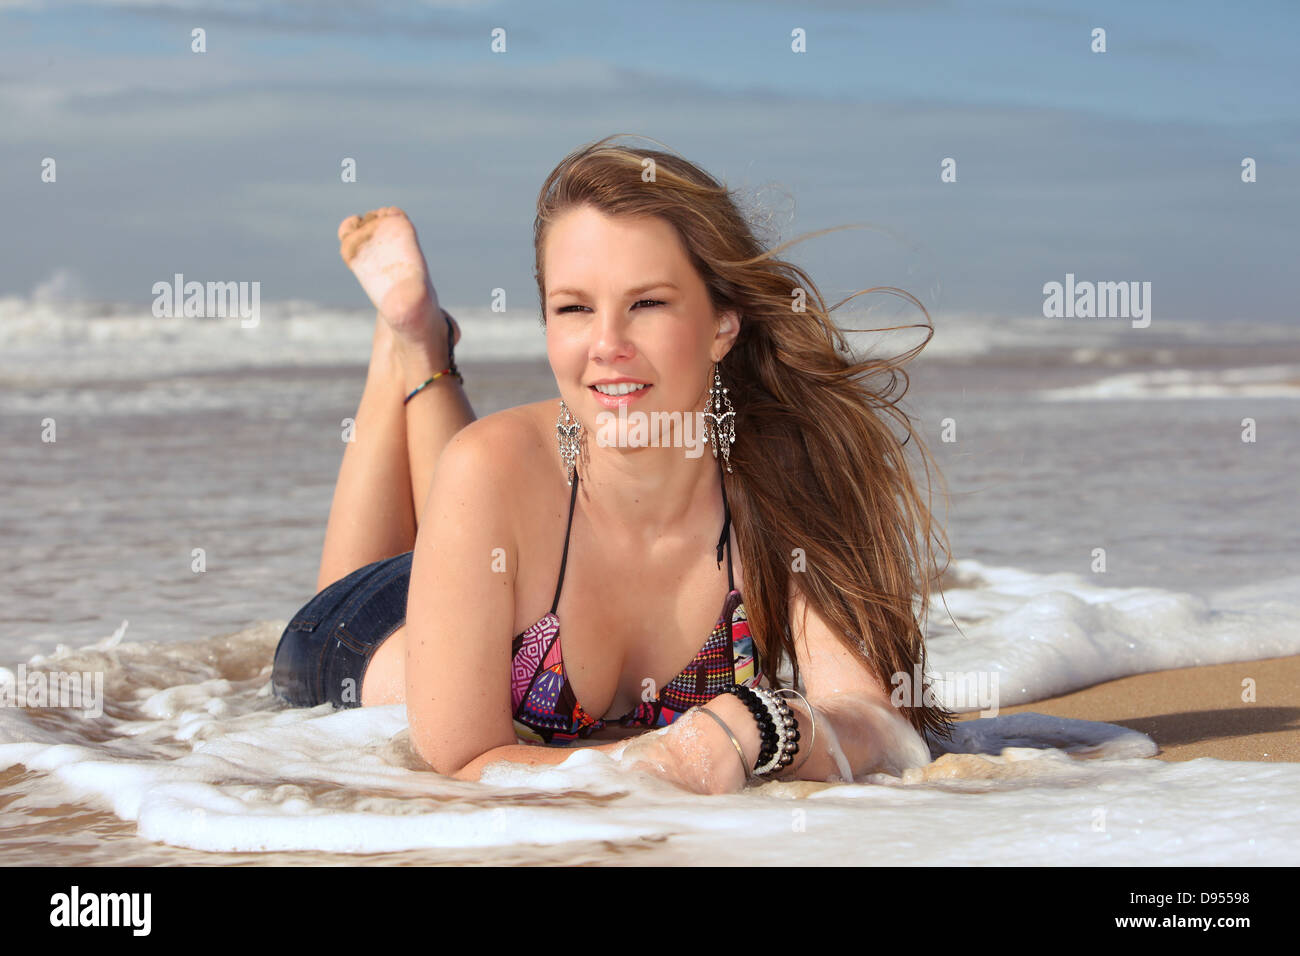 Eine junge sexy blonde Lady in ihrem Bikini in den brechenden Wellen am Strand liegen und lächelnd Weg. Stockfoto